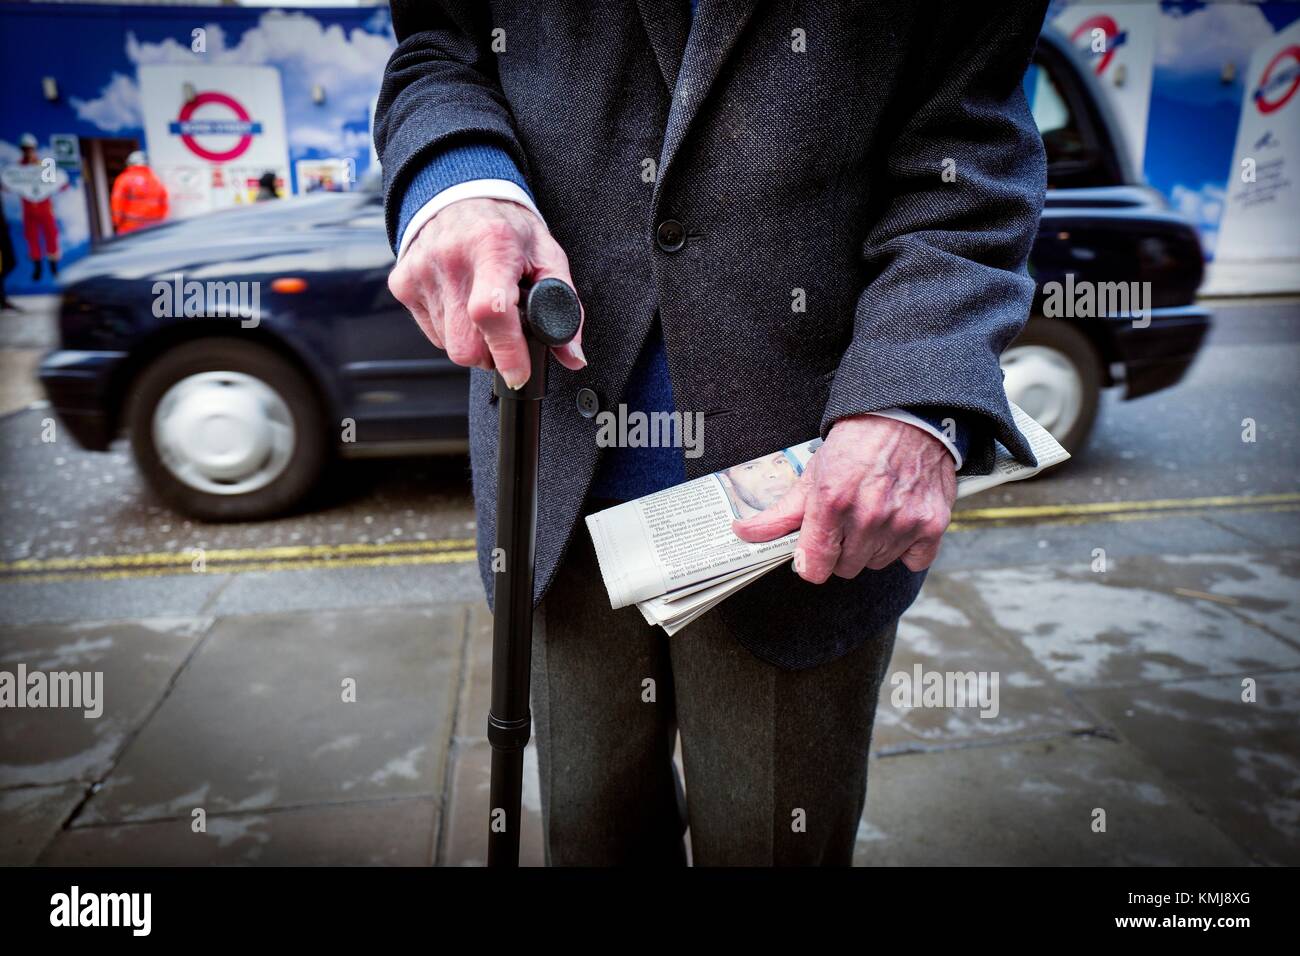 Il Primer plano de onu hombre mayor irreconocible con onu baston en una mano y onu periodico en la otra, al fondo ONU taxi. Oxford Street, Londres, Regno Unito, Europa. Foto Stock